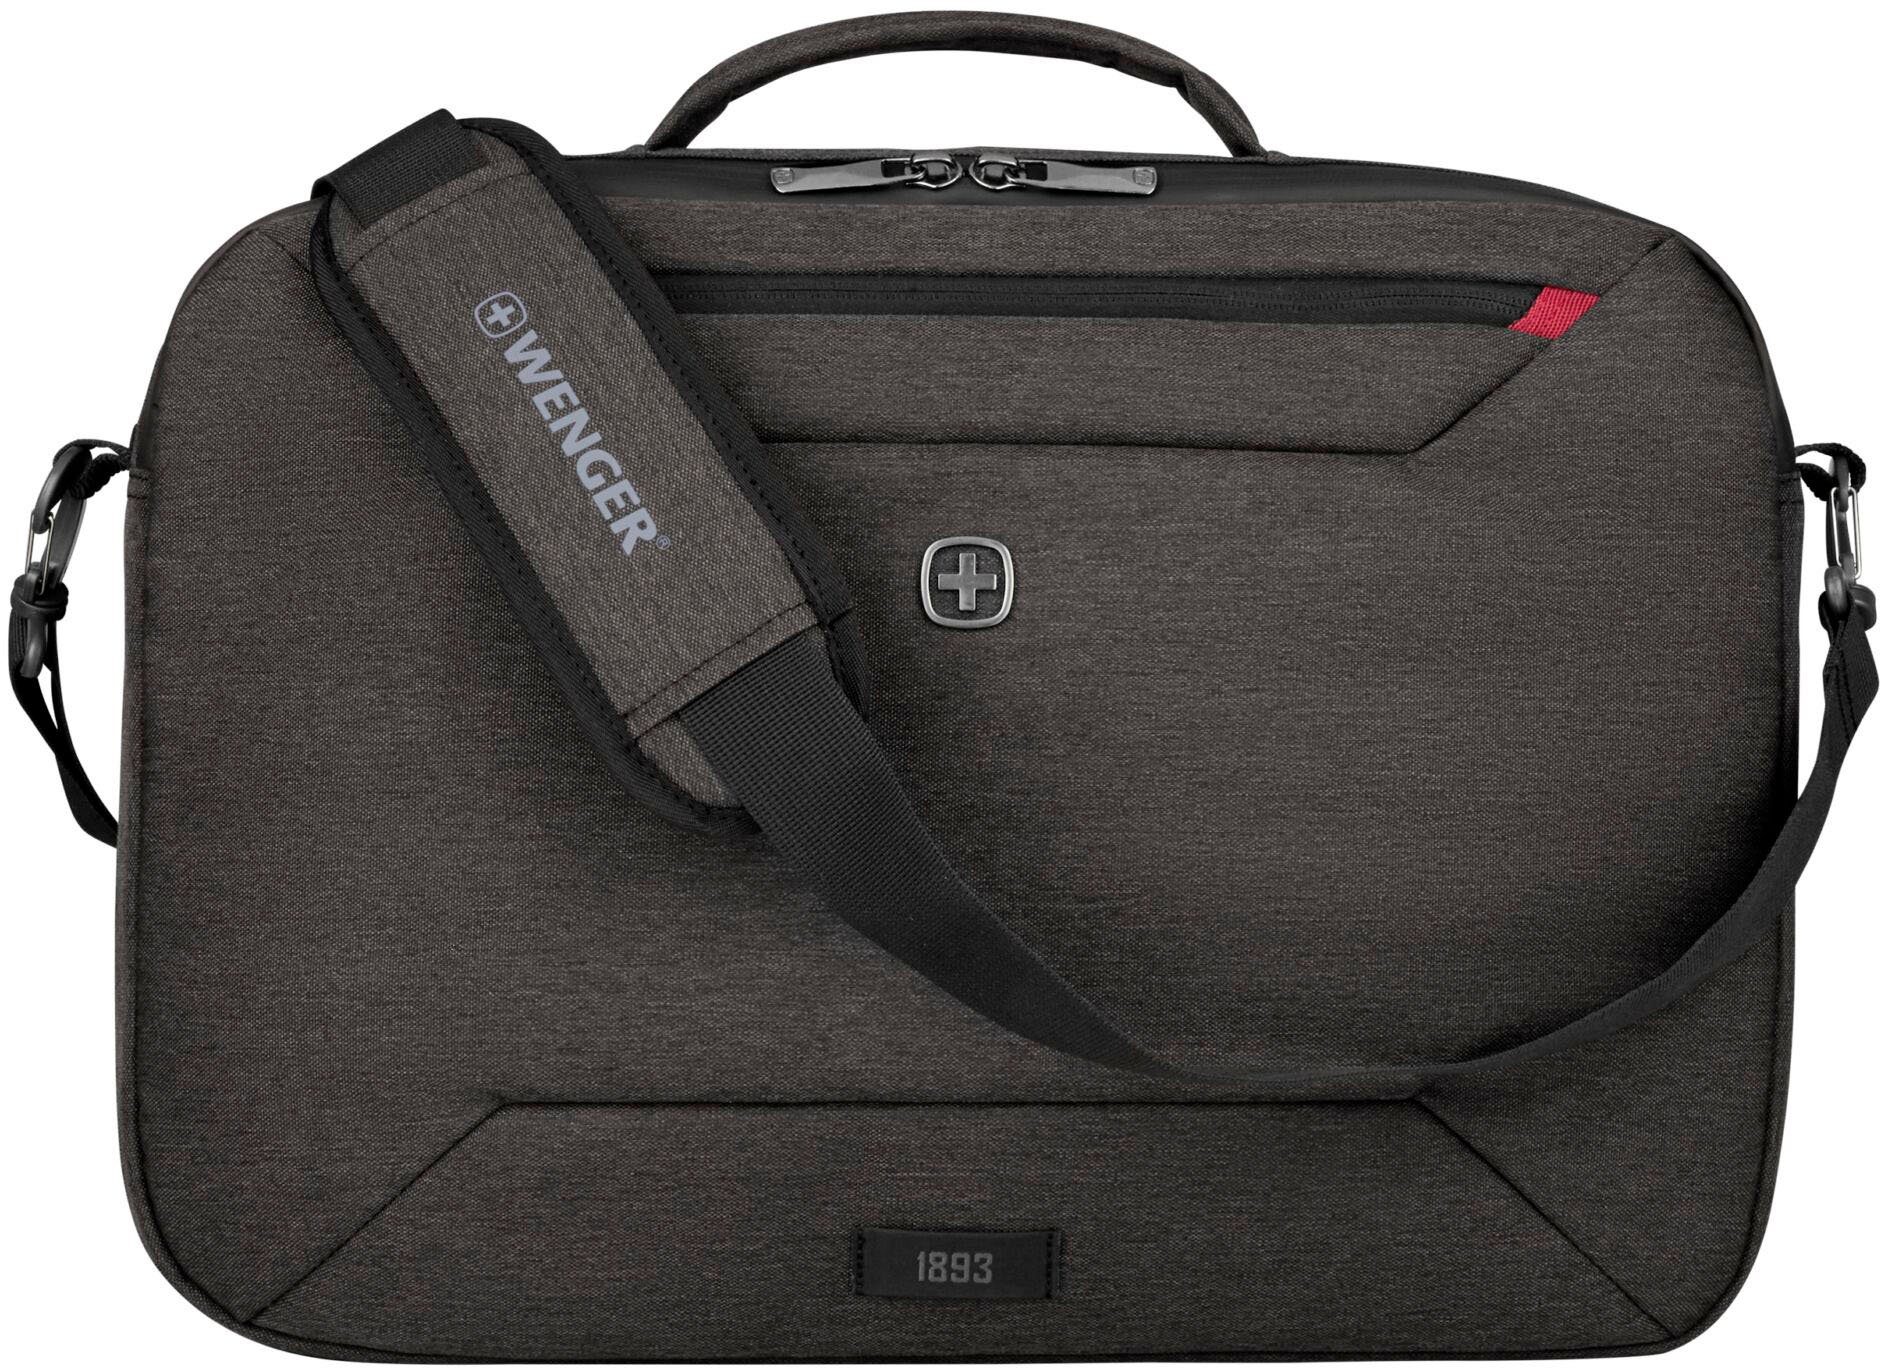 auch grau, tragbar Commute, 16-Zoll Rucksack mit Laptoptasche als Laptopfach, Wenger